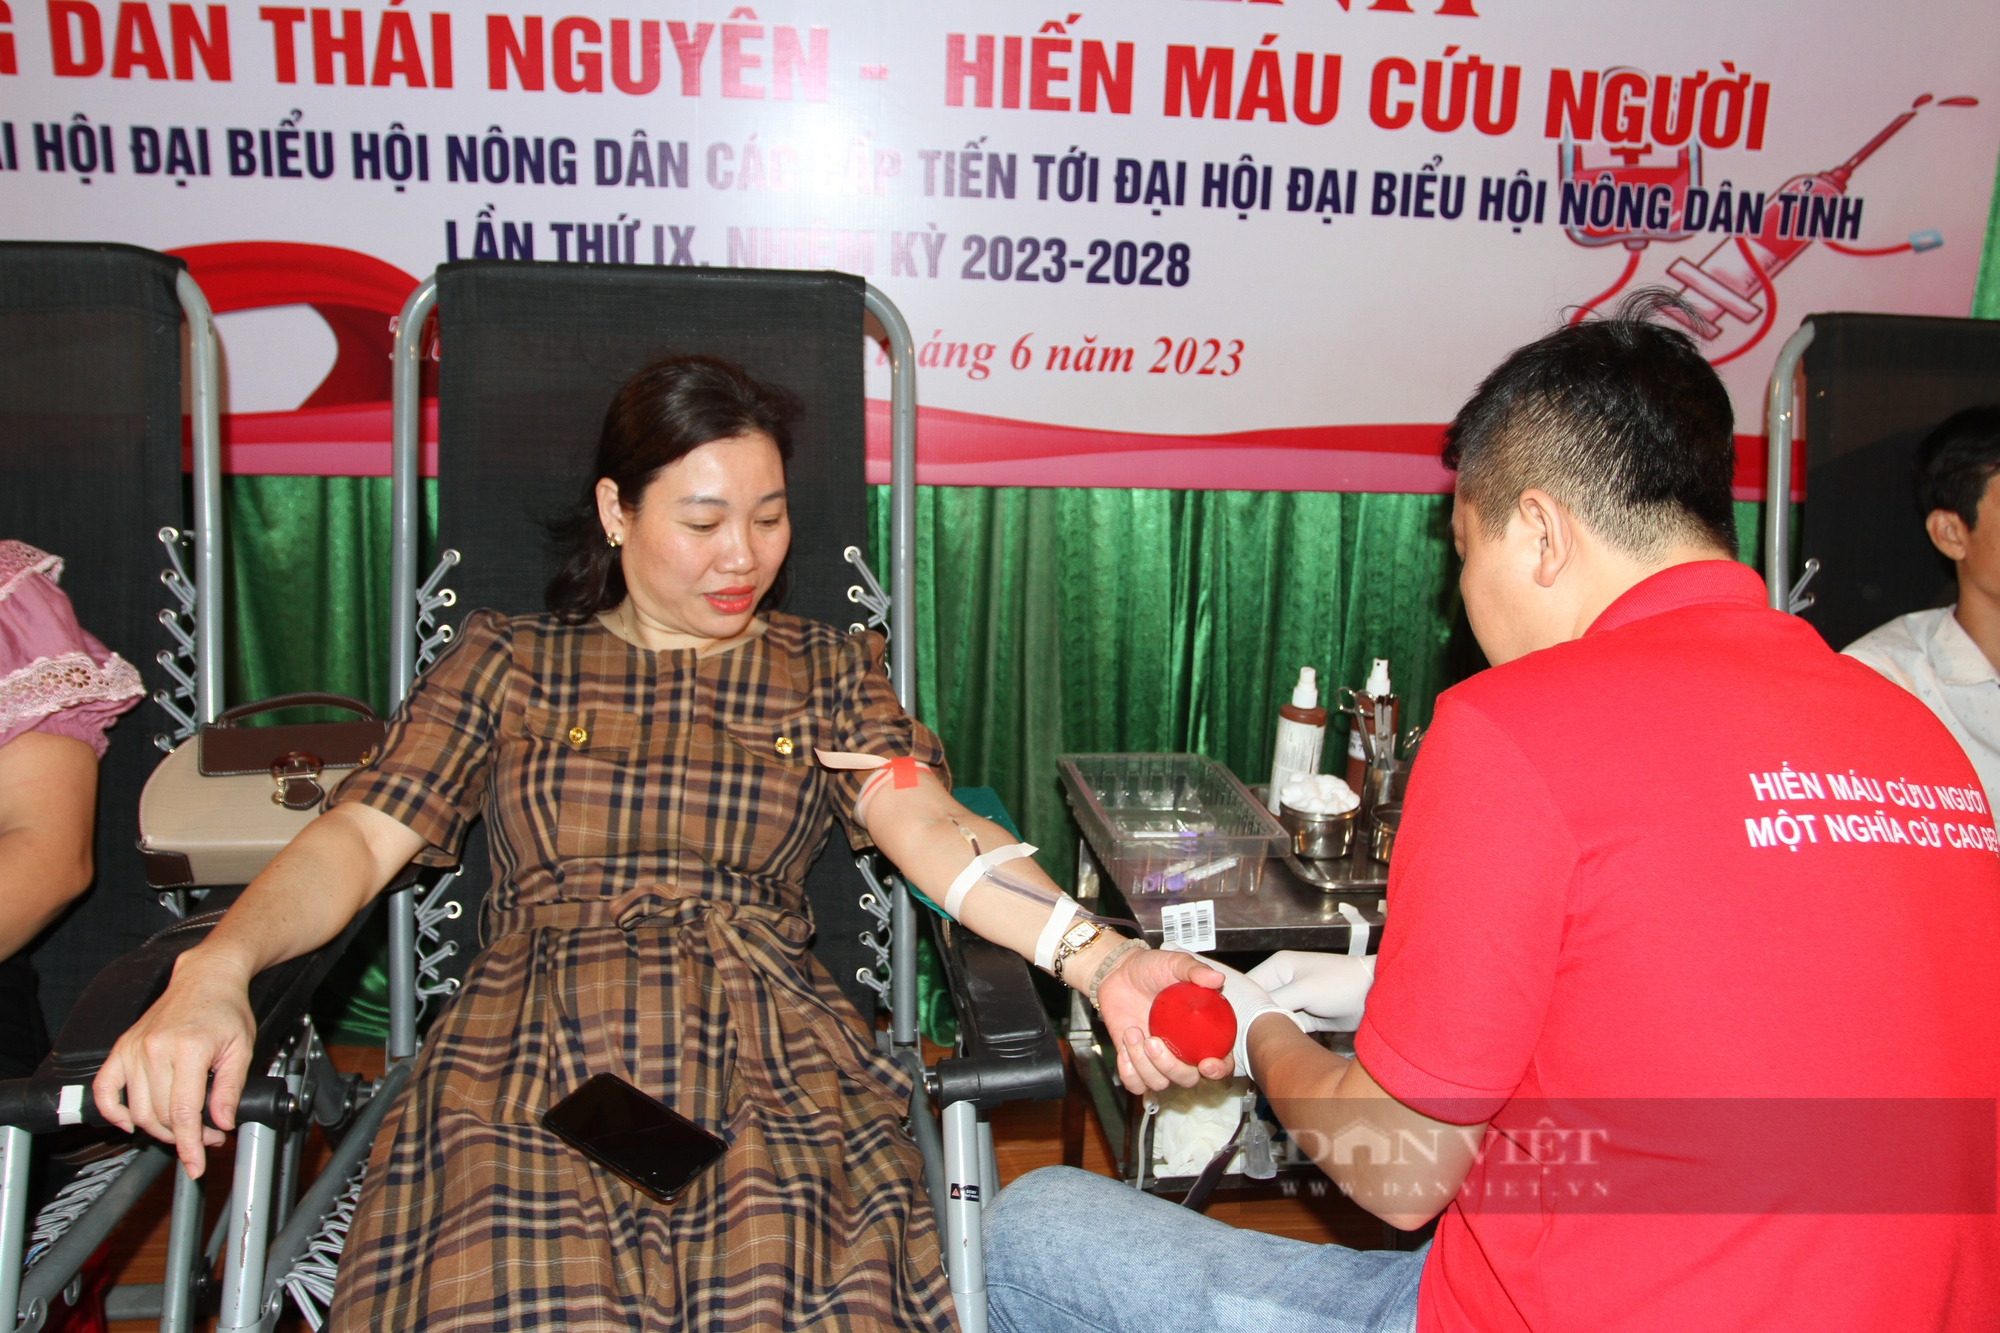 Hơn 500 cán bộ, hội viên nông dân Thái Nguyên tham gia chương trình hiến máu cứu người - Ảnh 5.